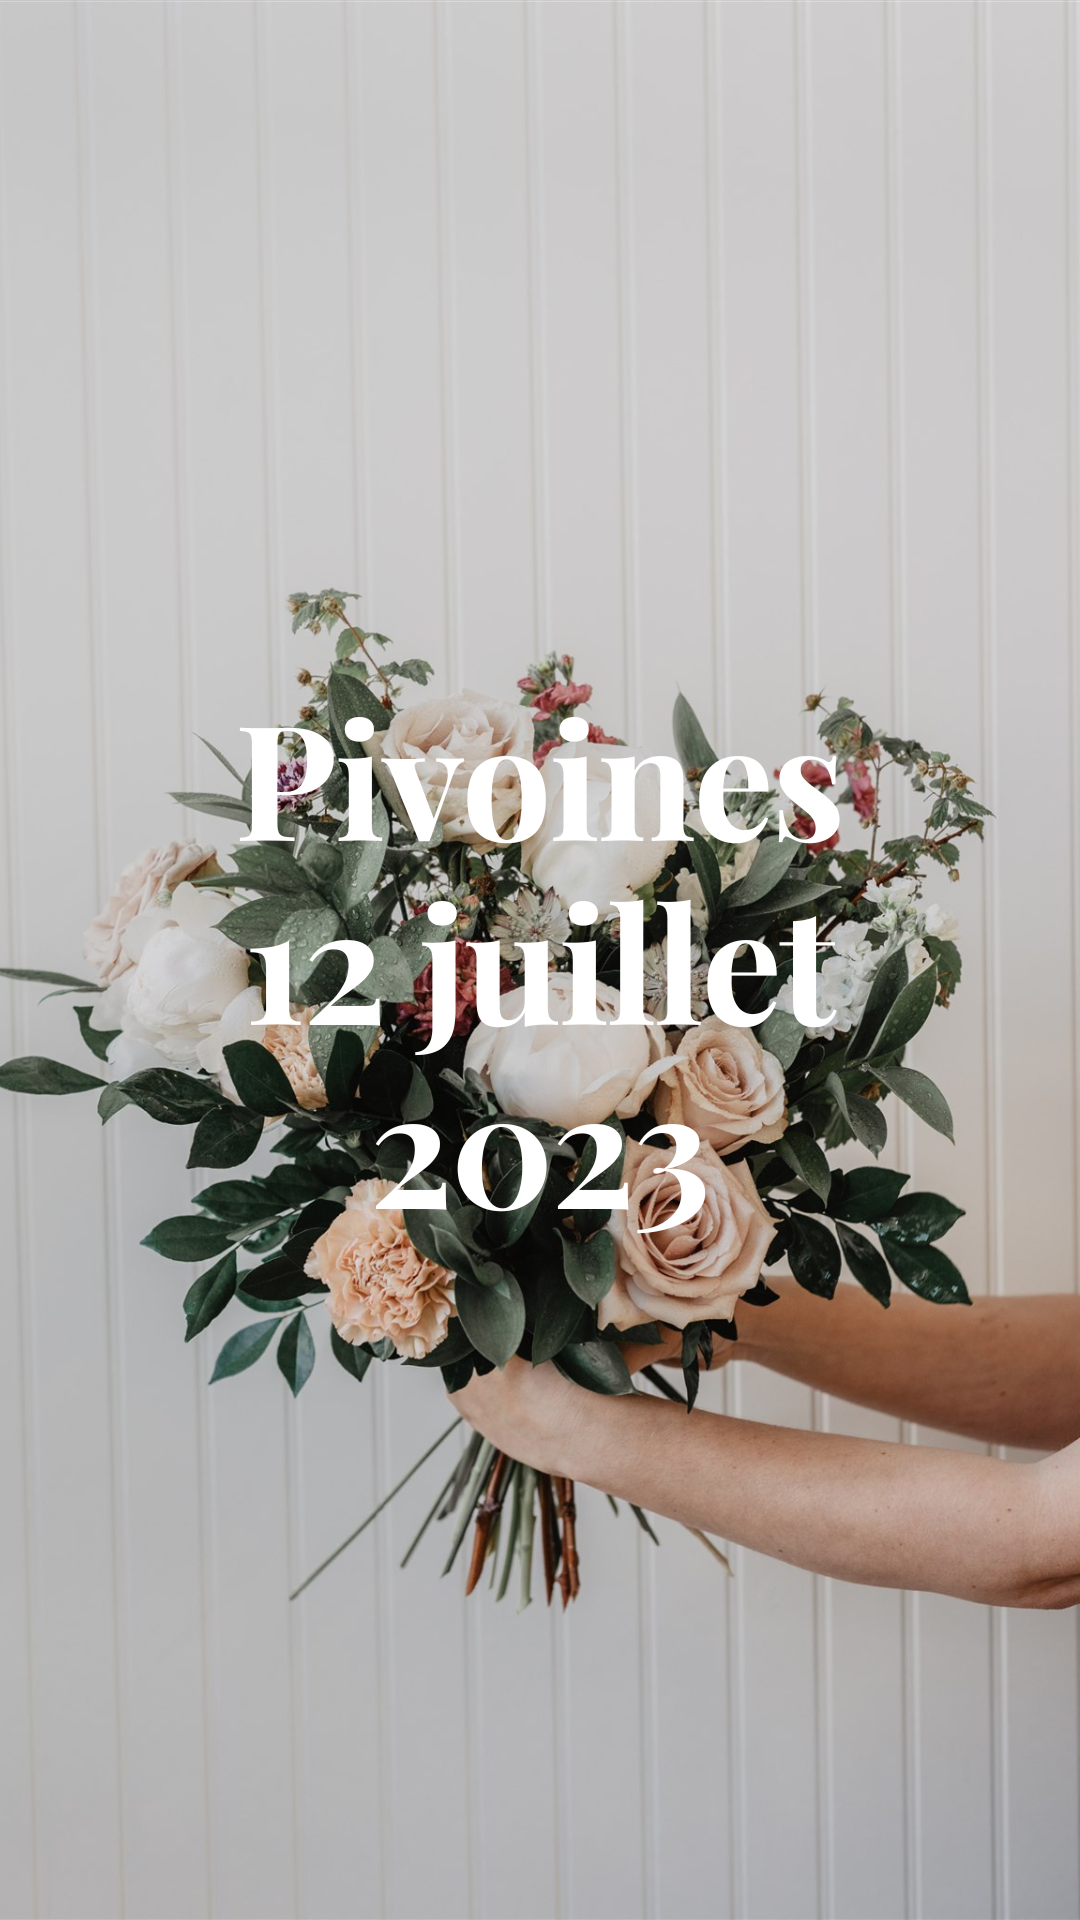 Atelier 12 juillet - Intro à la Fleuristerie - Bouquet Lié